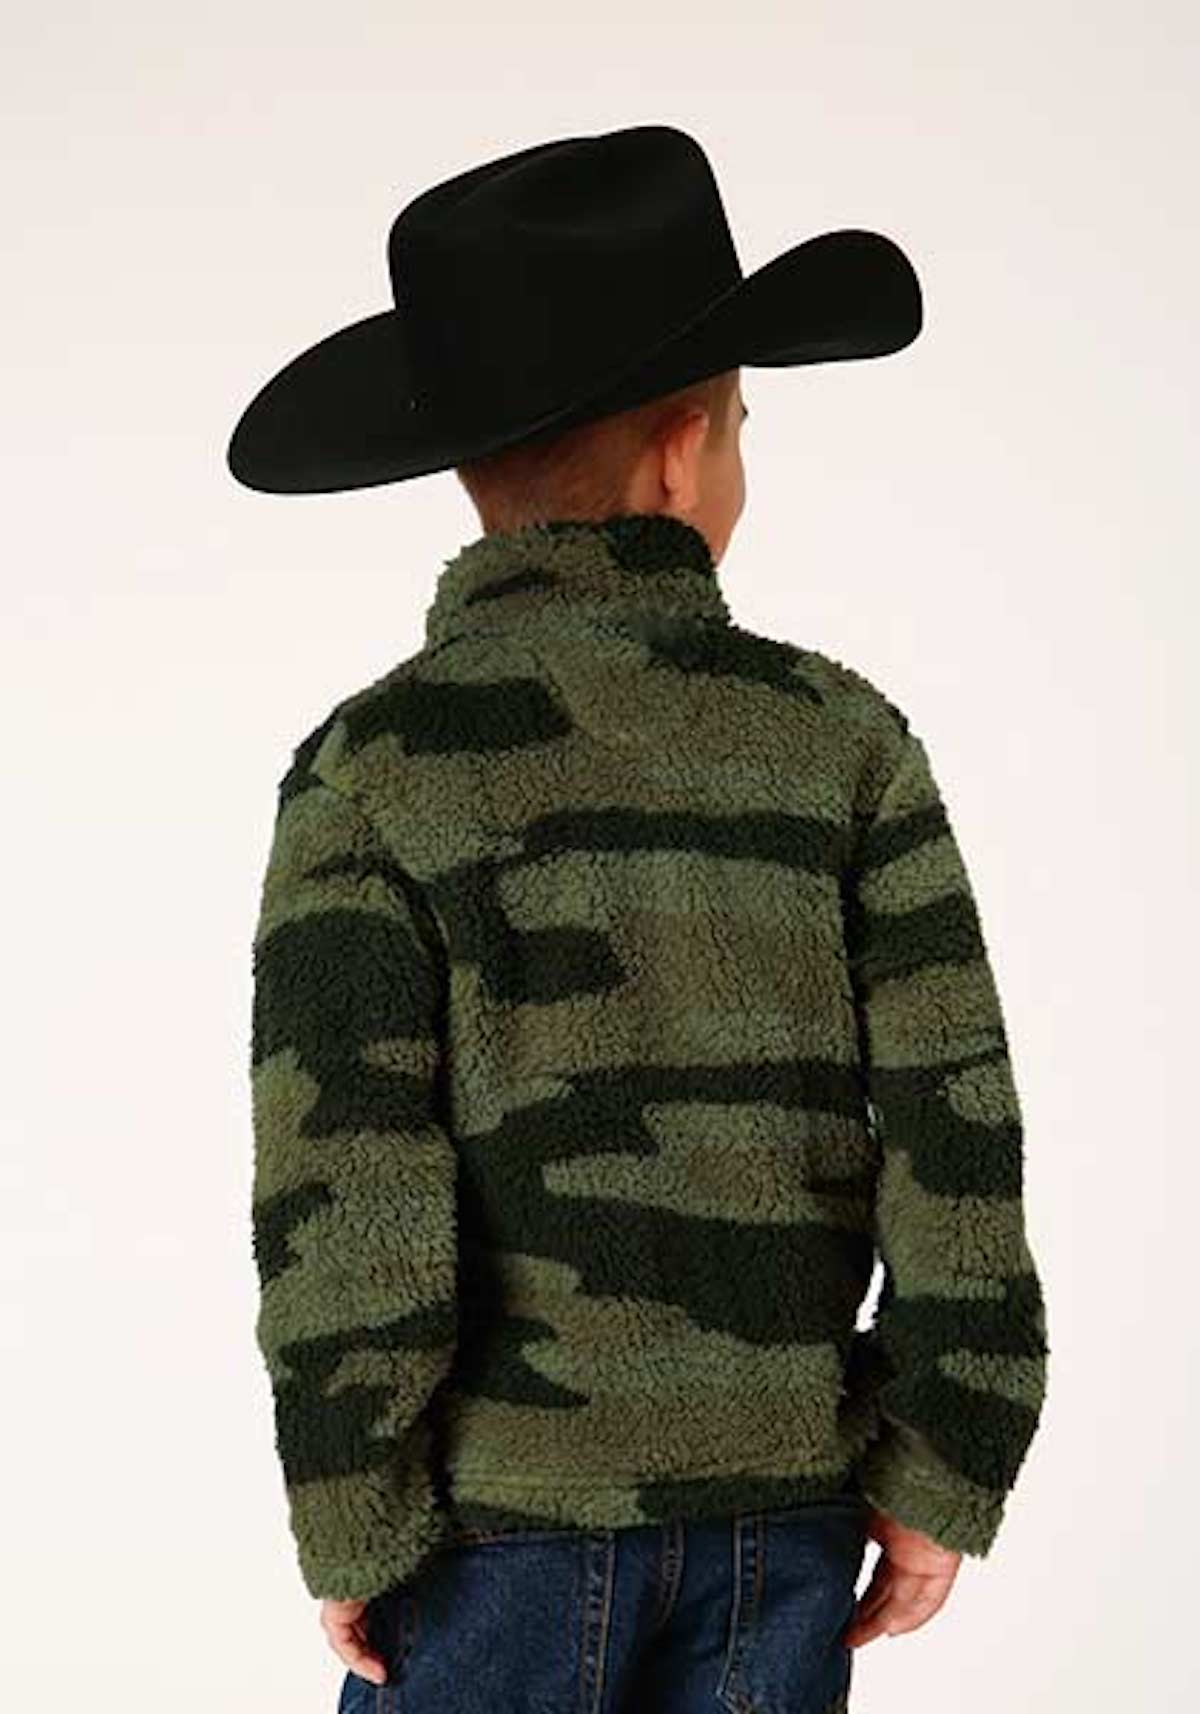 Roper® Boy's Camo Print Fleece 1/4 Zip Pullover